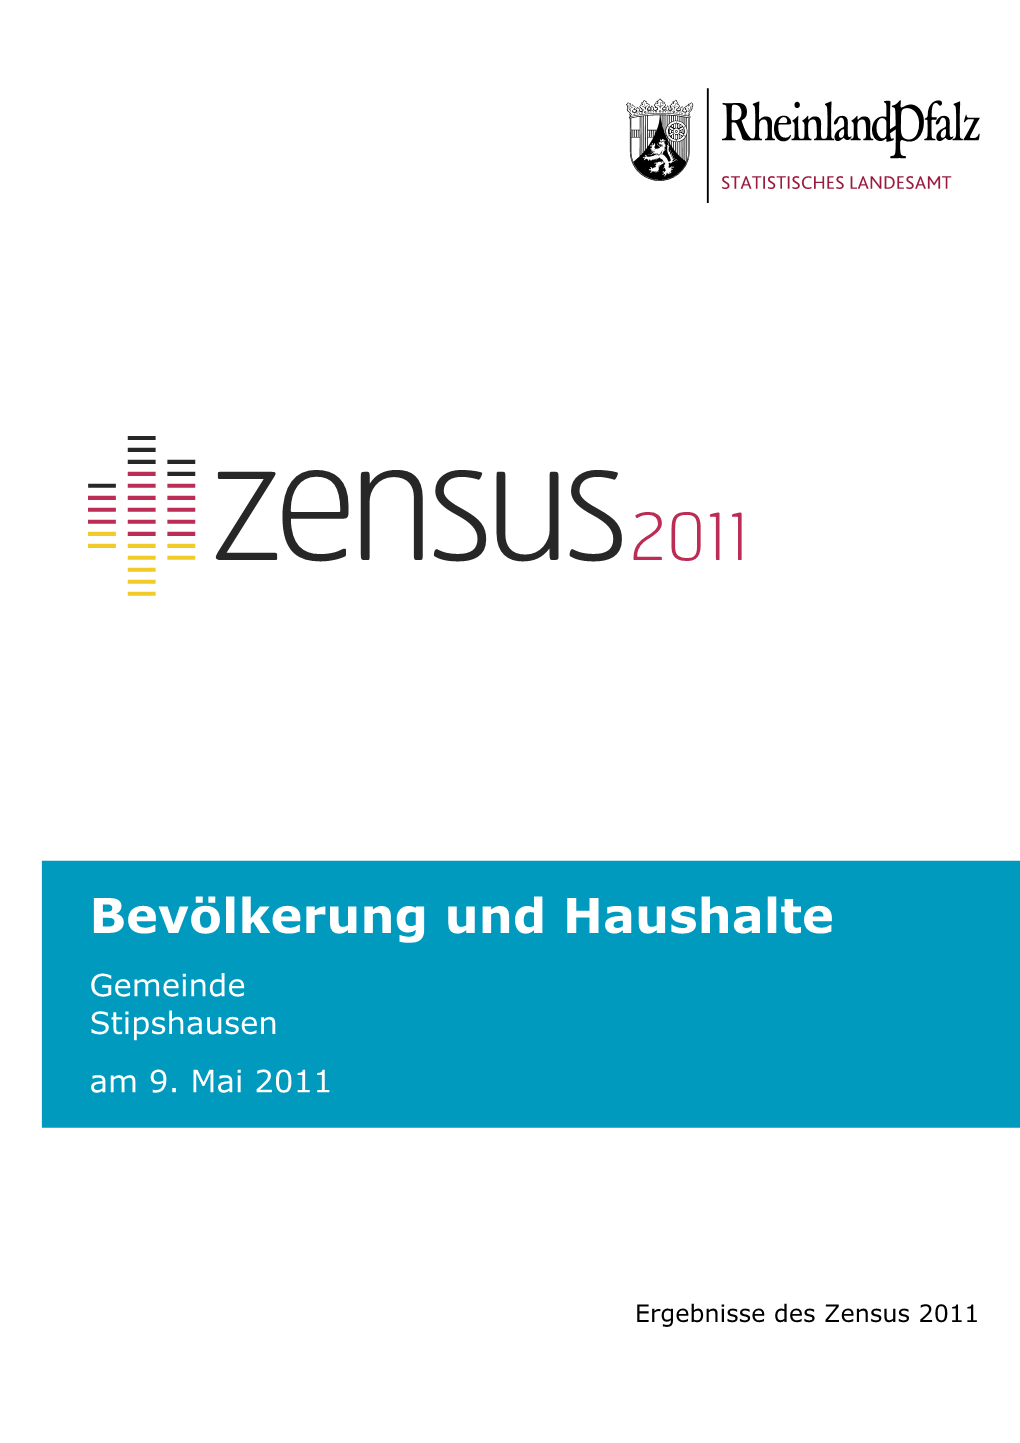 Bevölkerung Und Haushalte Am 9. Mai 2011, Stipshausen